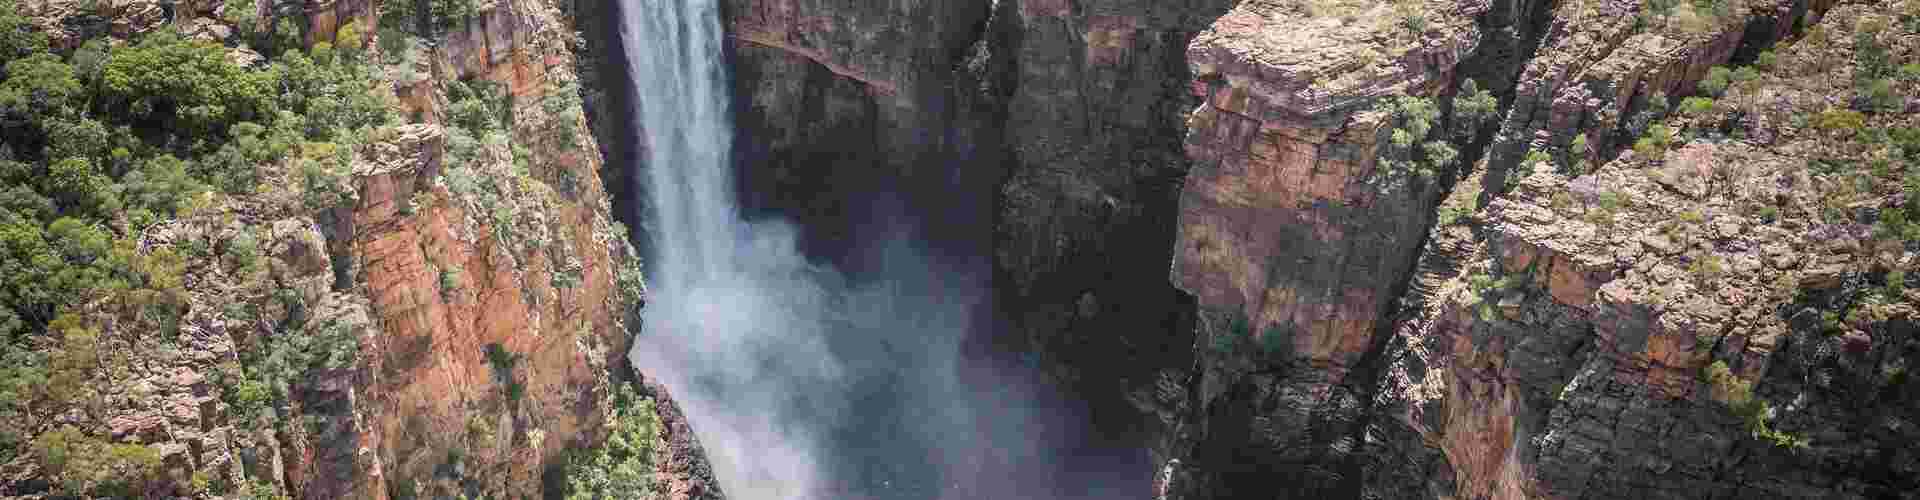 Water cascades down the cliffs of Jim Jim Falls in Kakadu National Park